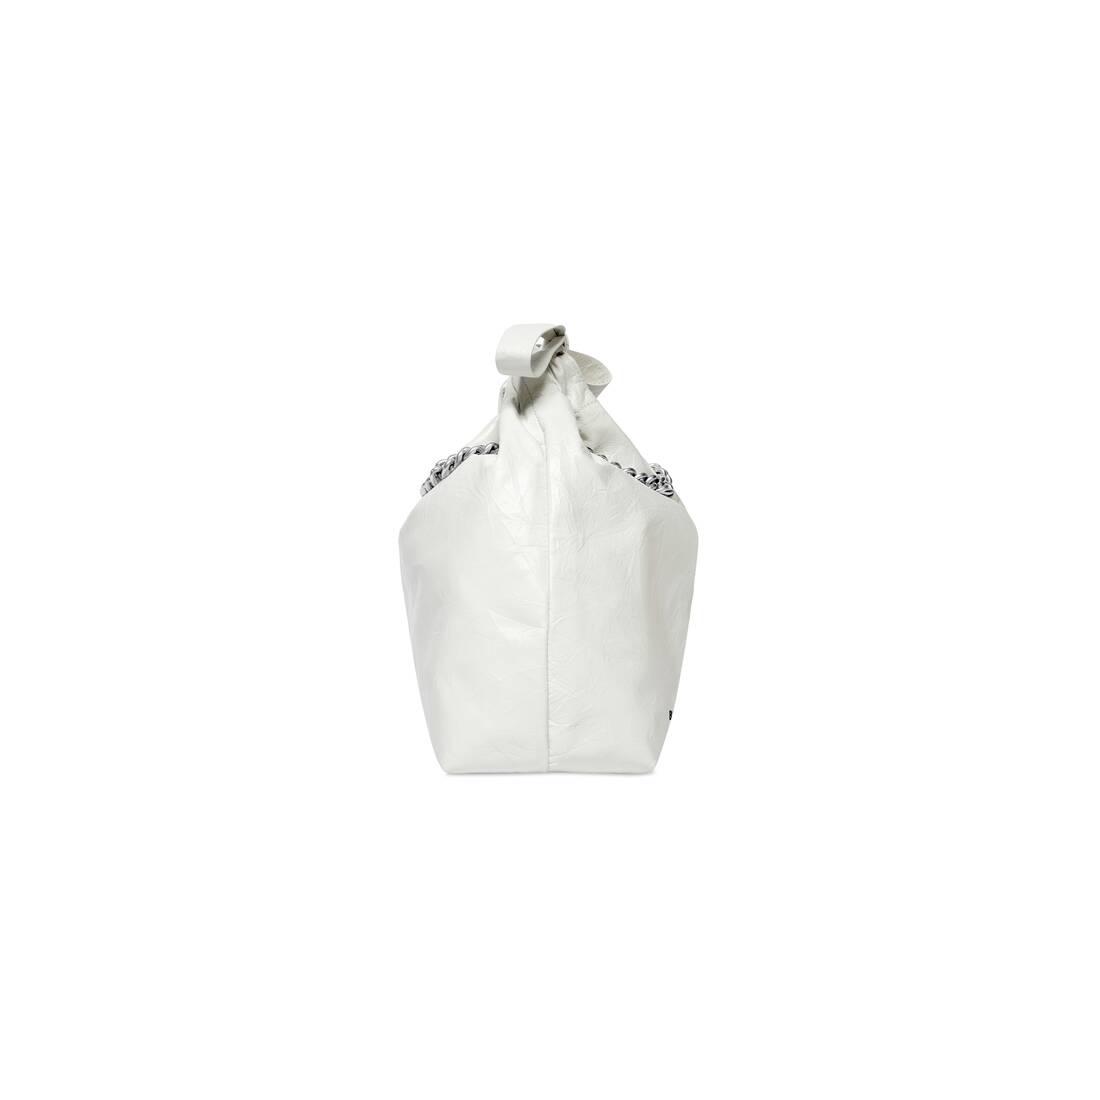 BALENCIAGA Calfskin Hello Kitty M Ville Top Handle Bag Optic White 707713